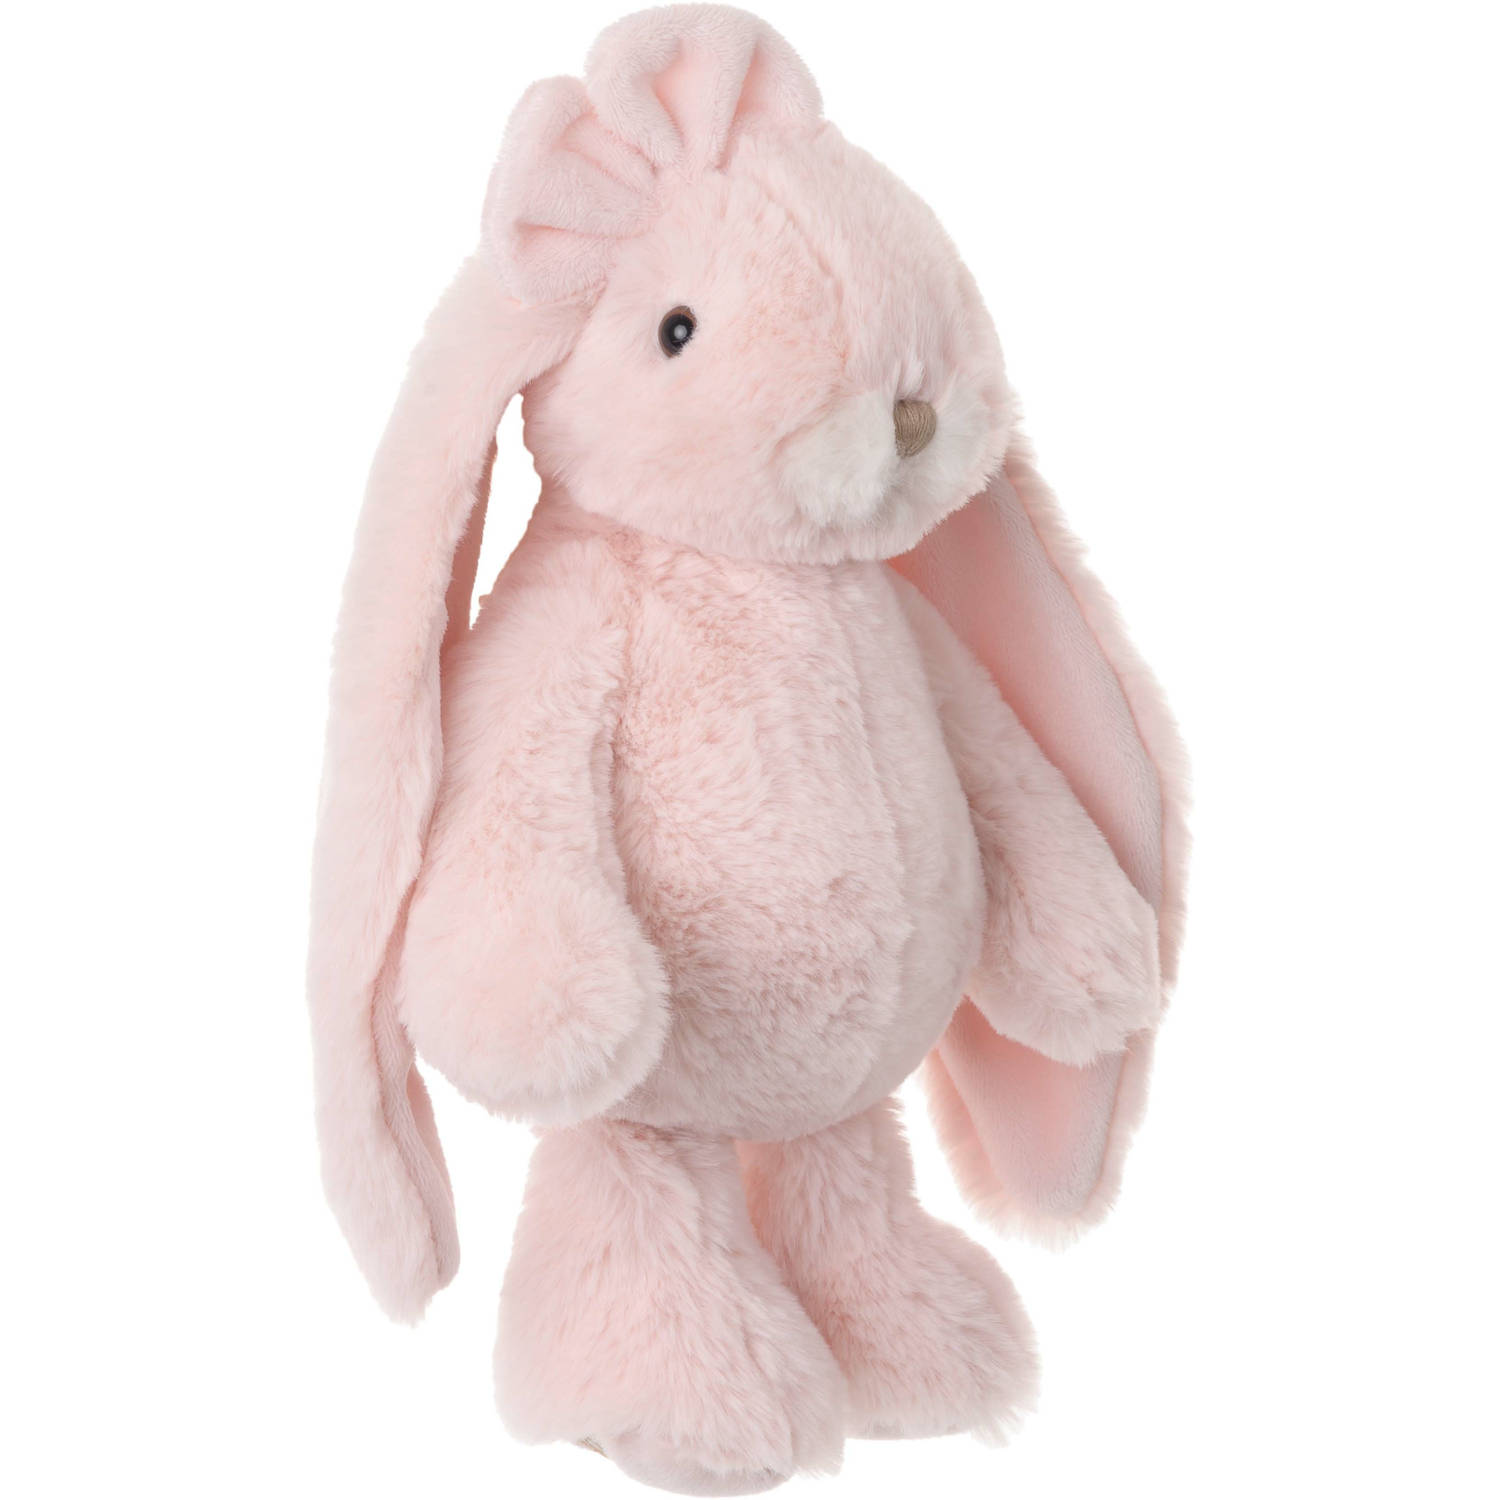 Bukowski pluche konijn knuffeldier - lichtroze - staand - 30 cm - Luxe kwaliteit knuffels